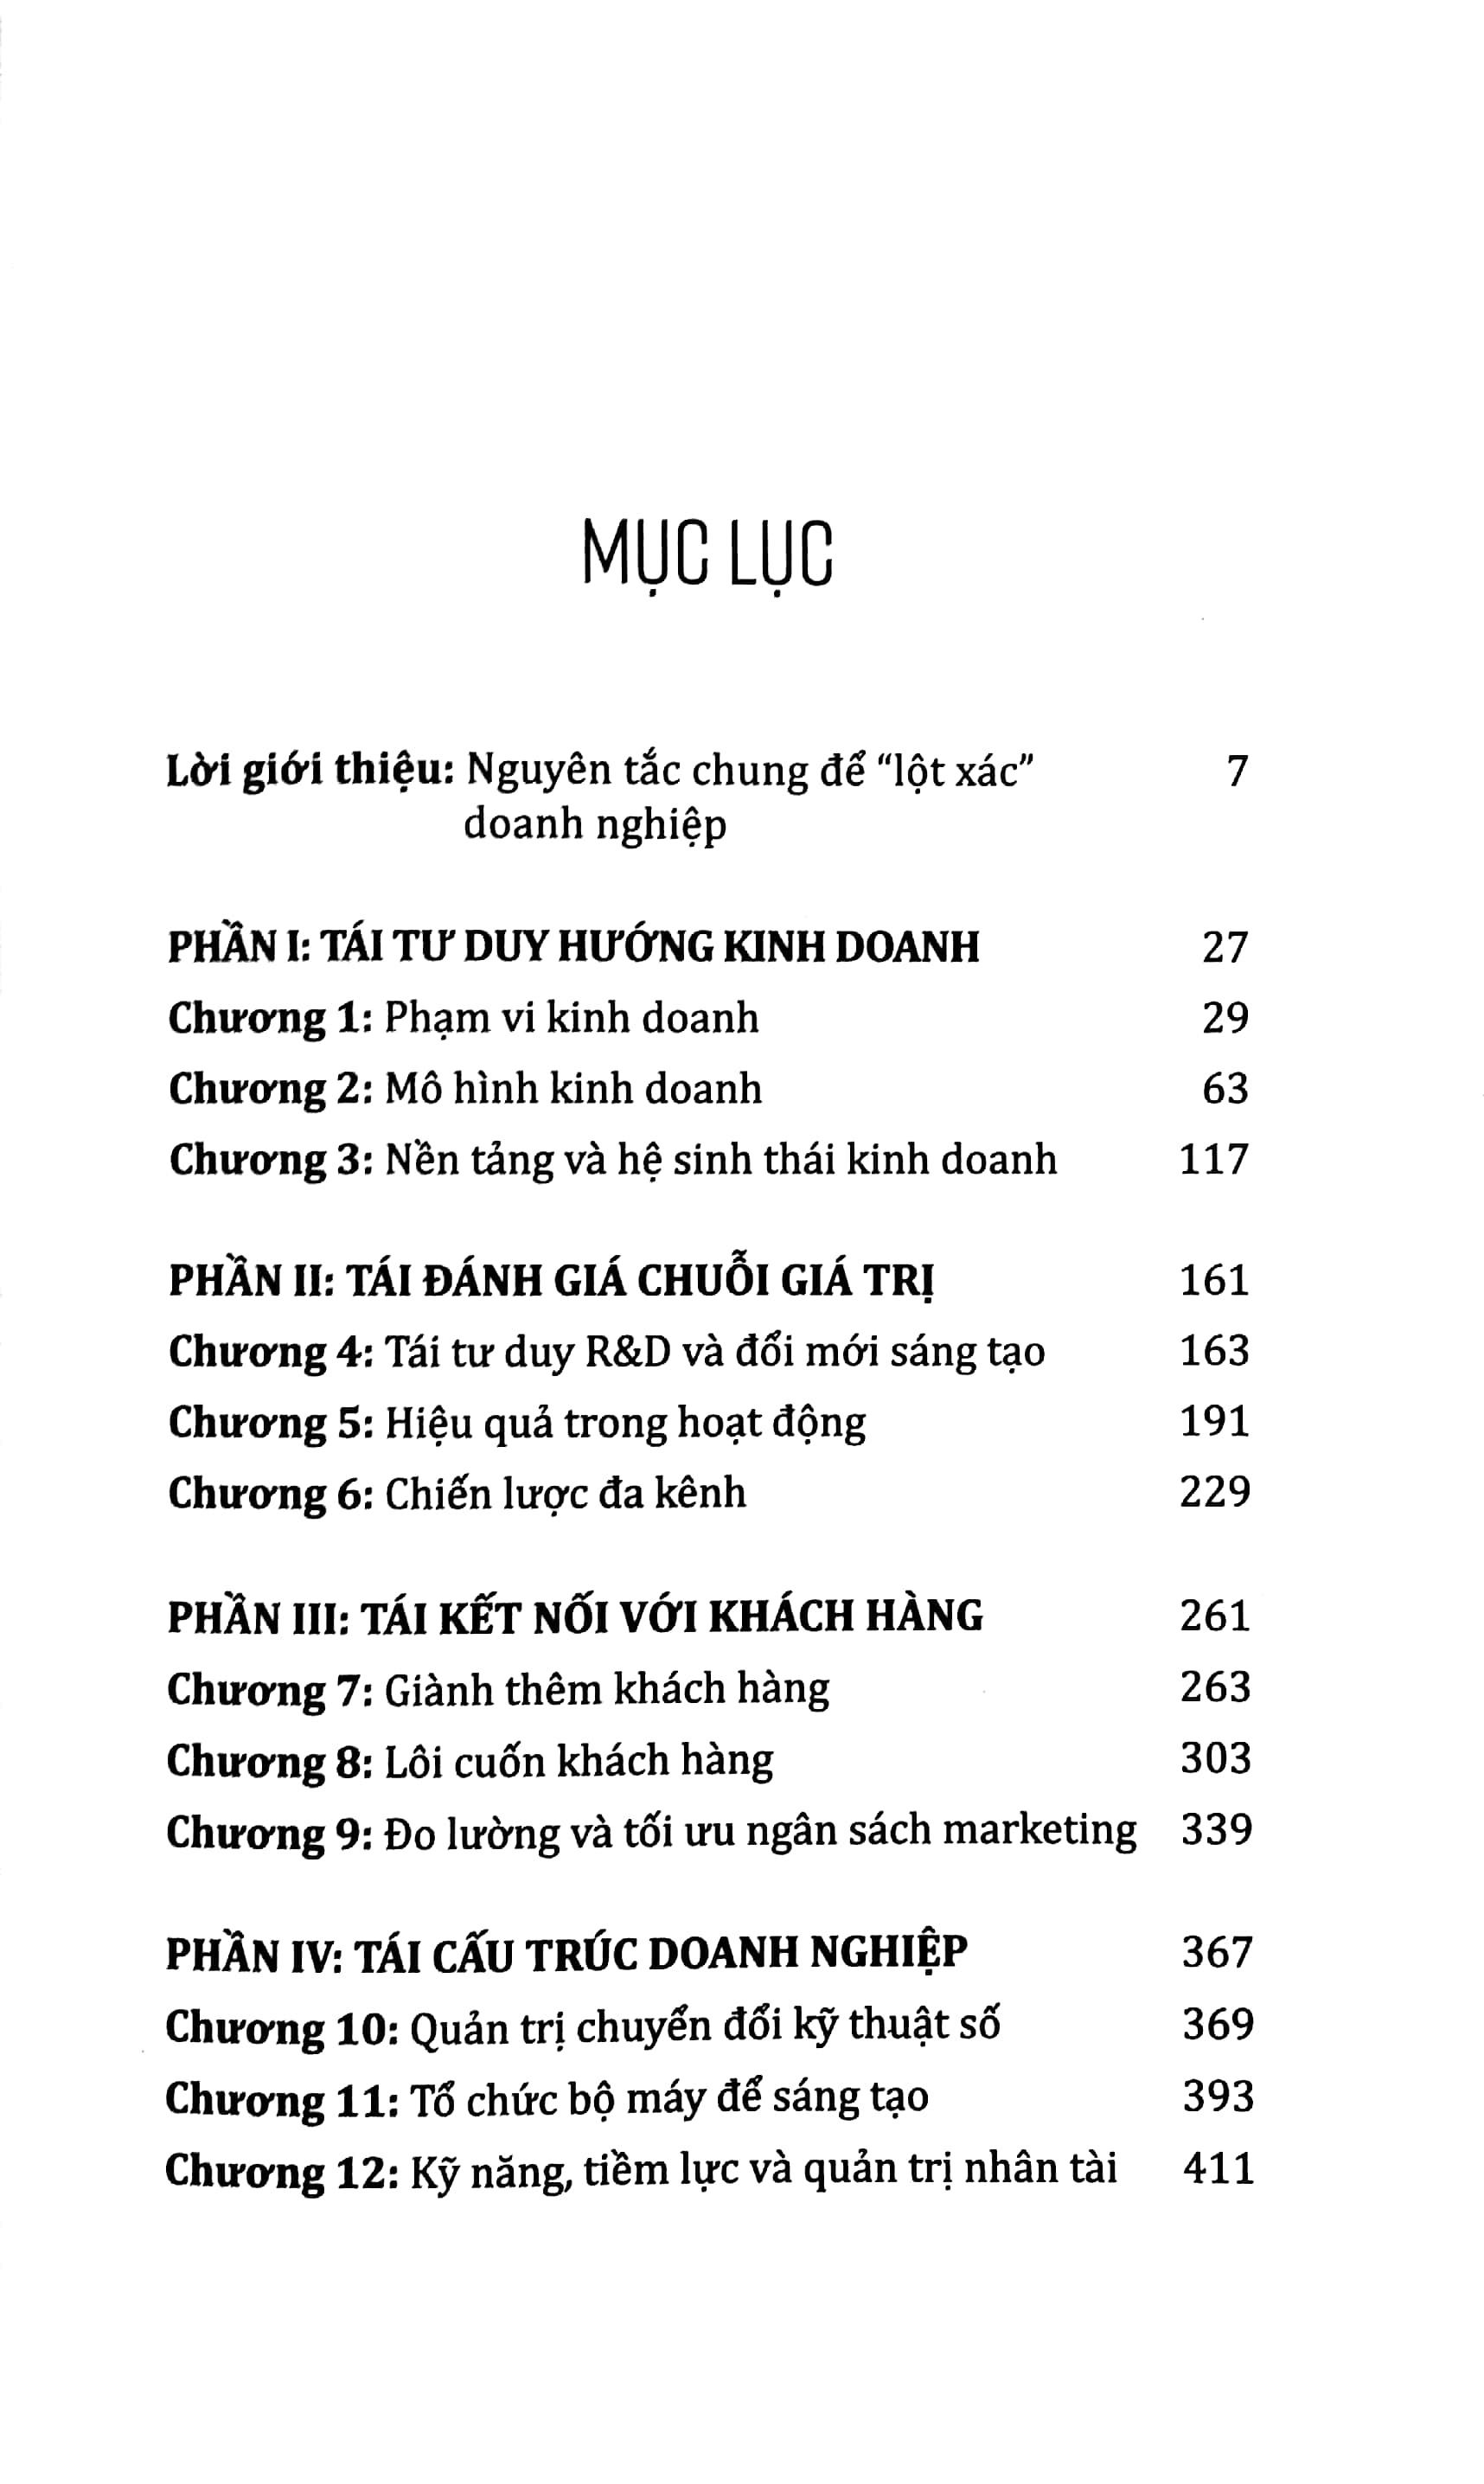 Kinh Doanh Trong Thời Đại 4.0 - Driving Digital Strategy PDF